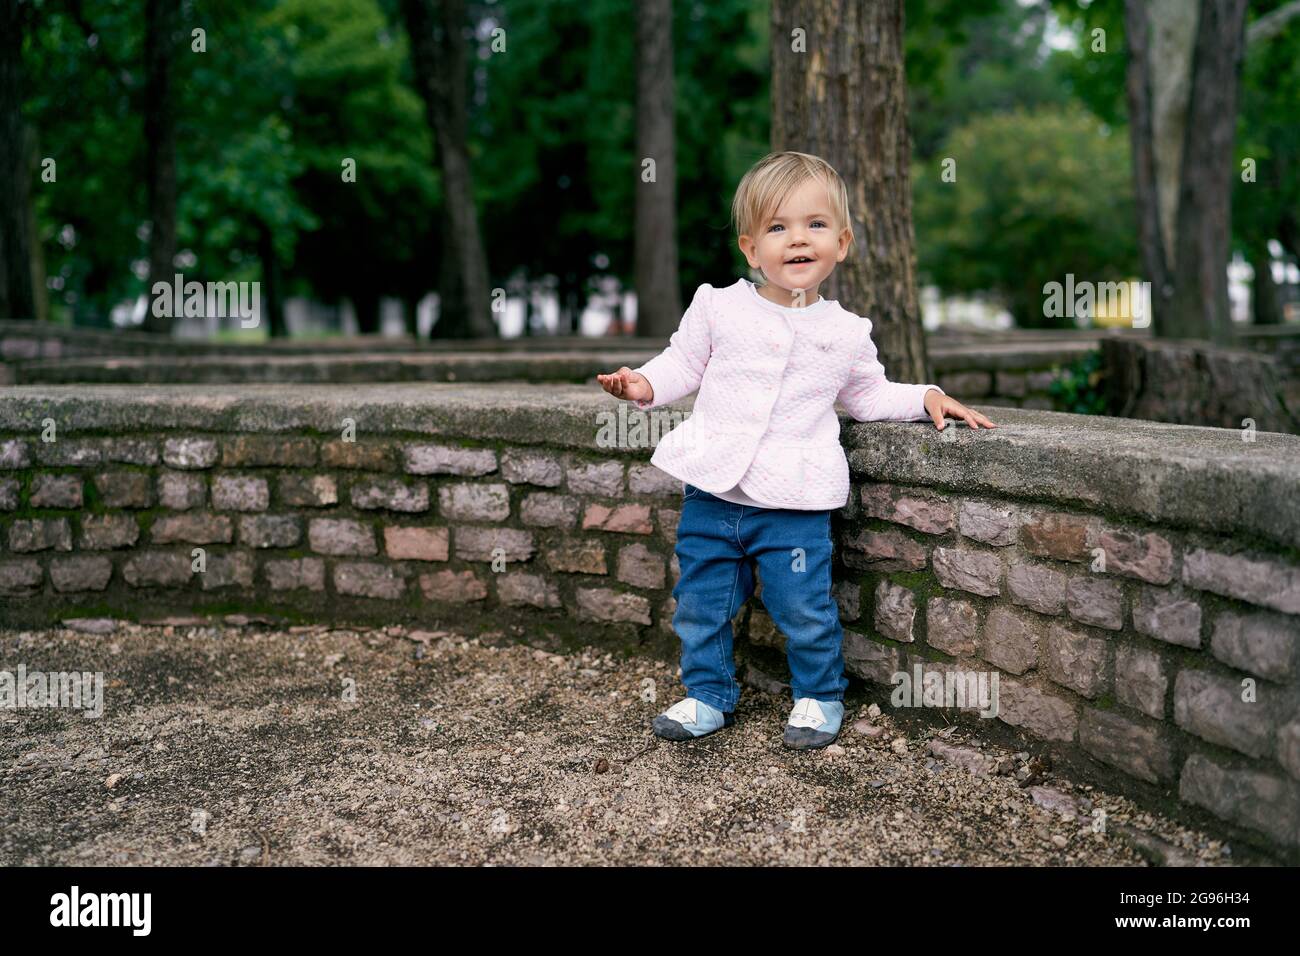 Das kleine Mädchen steht in der Nähe eines niedrigen Steinzauns in einem grünen Park Stockfoto